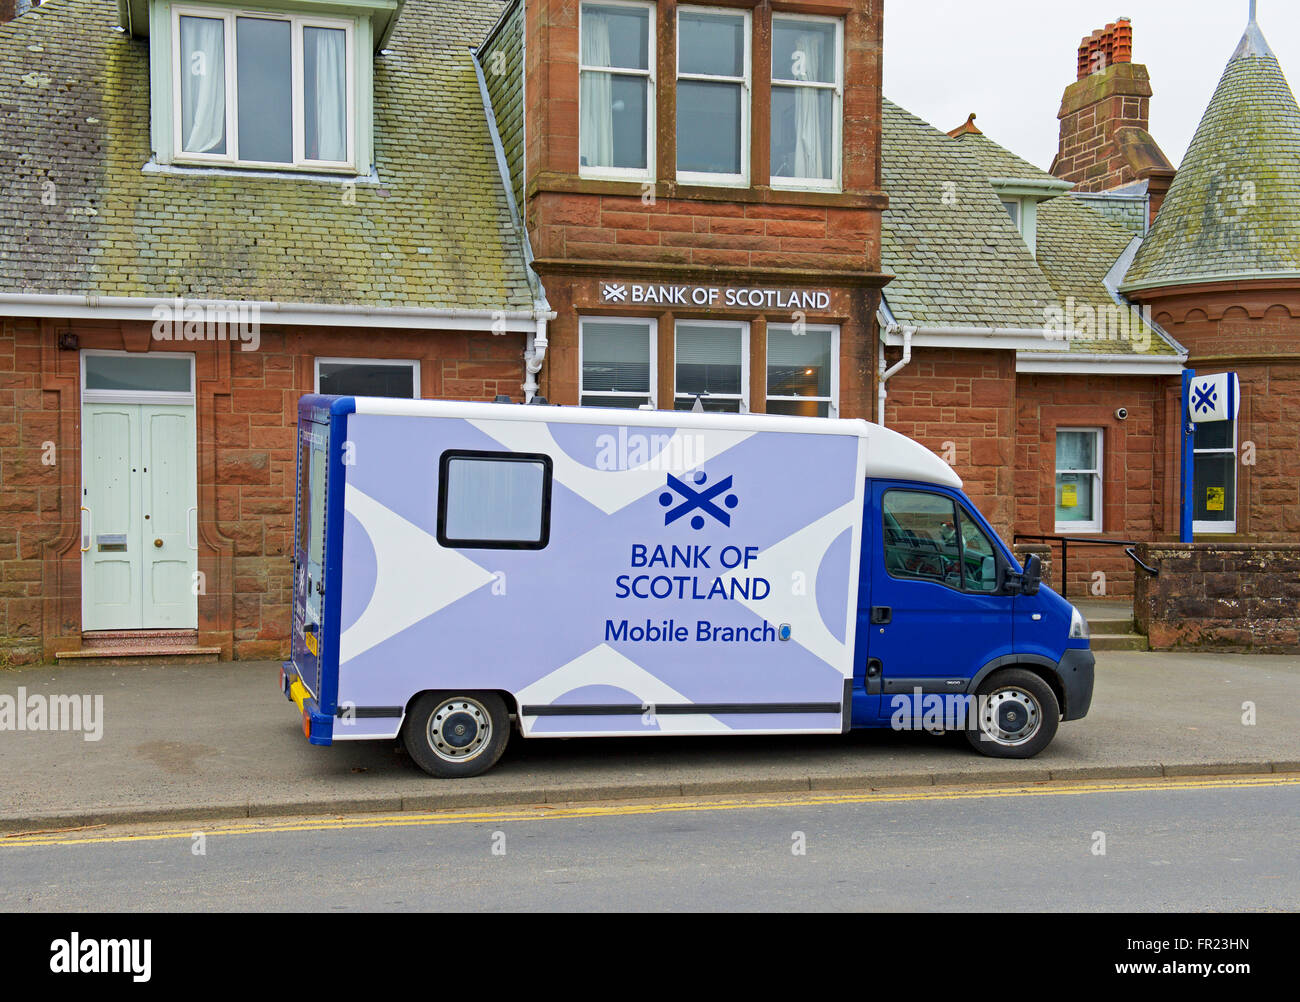 Mobile-Bank of Scotland van außerhalb der Filiale der Bank, Brodick, Isle of Arran, North Ayrshire, Schottland, Vereinigtes Königreich Stockfoto